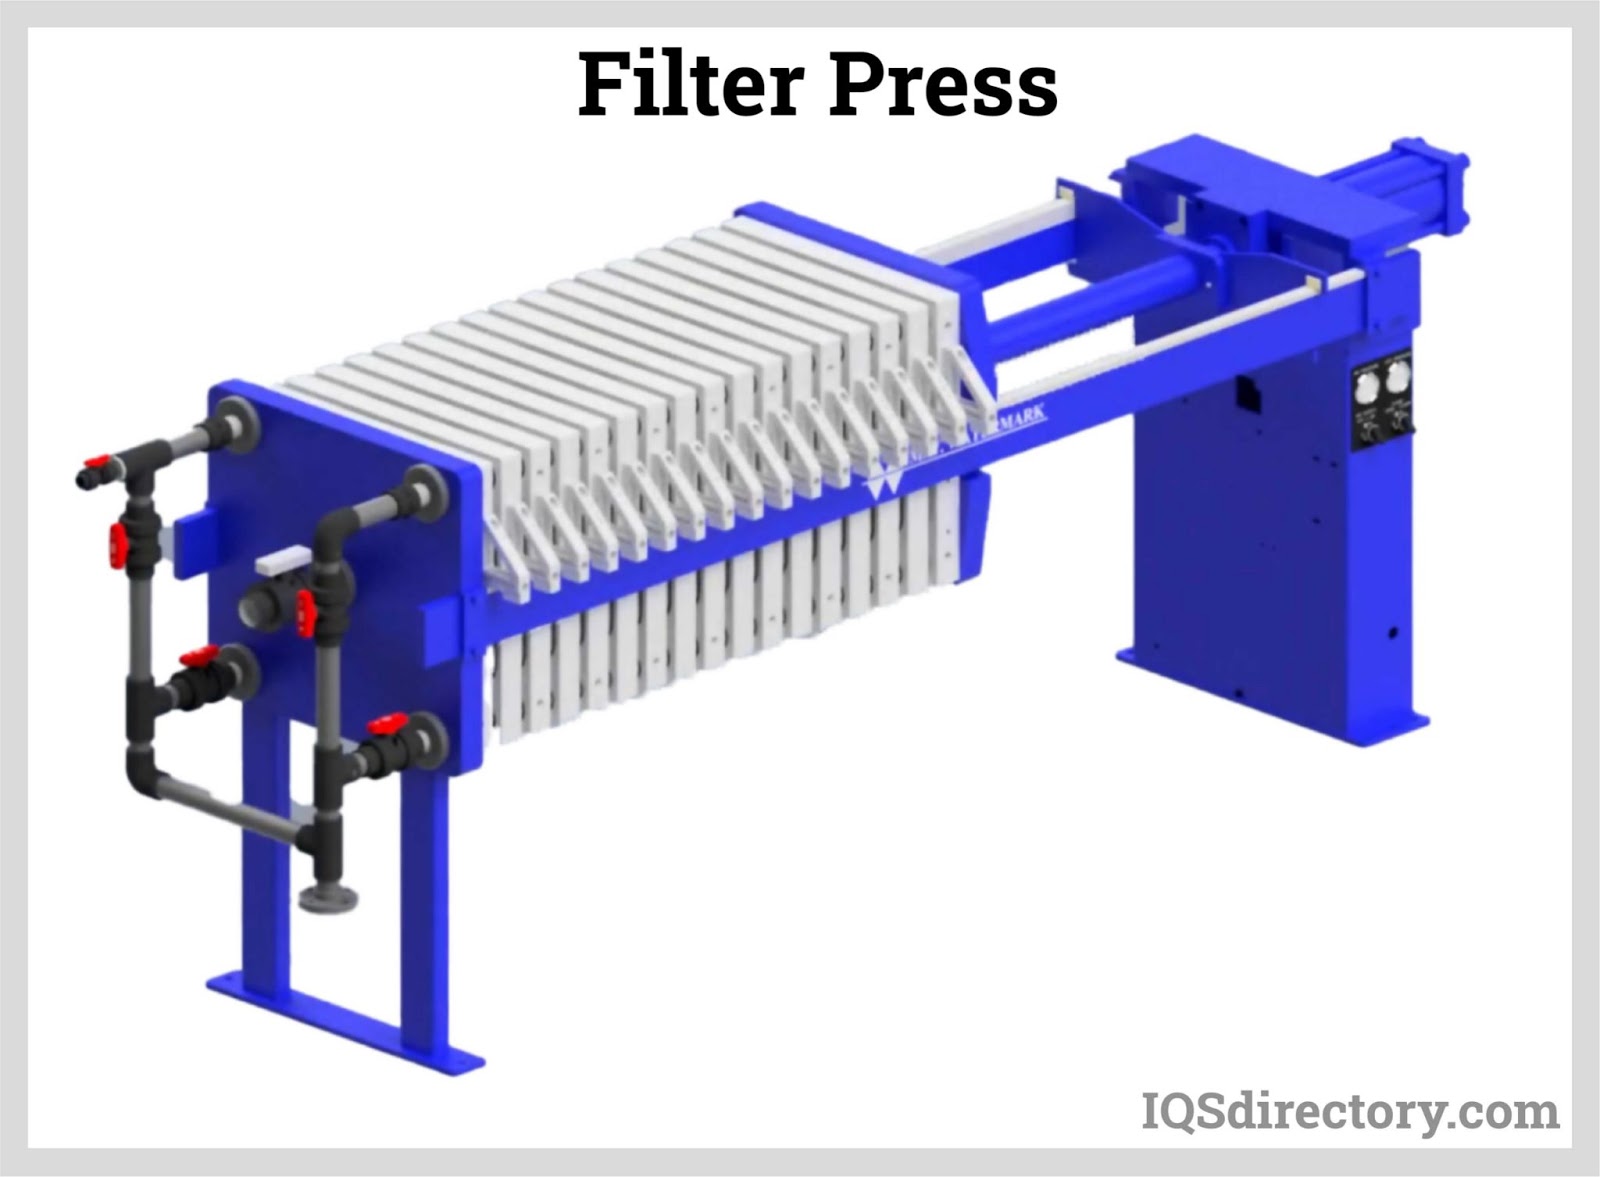 Séparation liquide/solide et composants key filter press